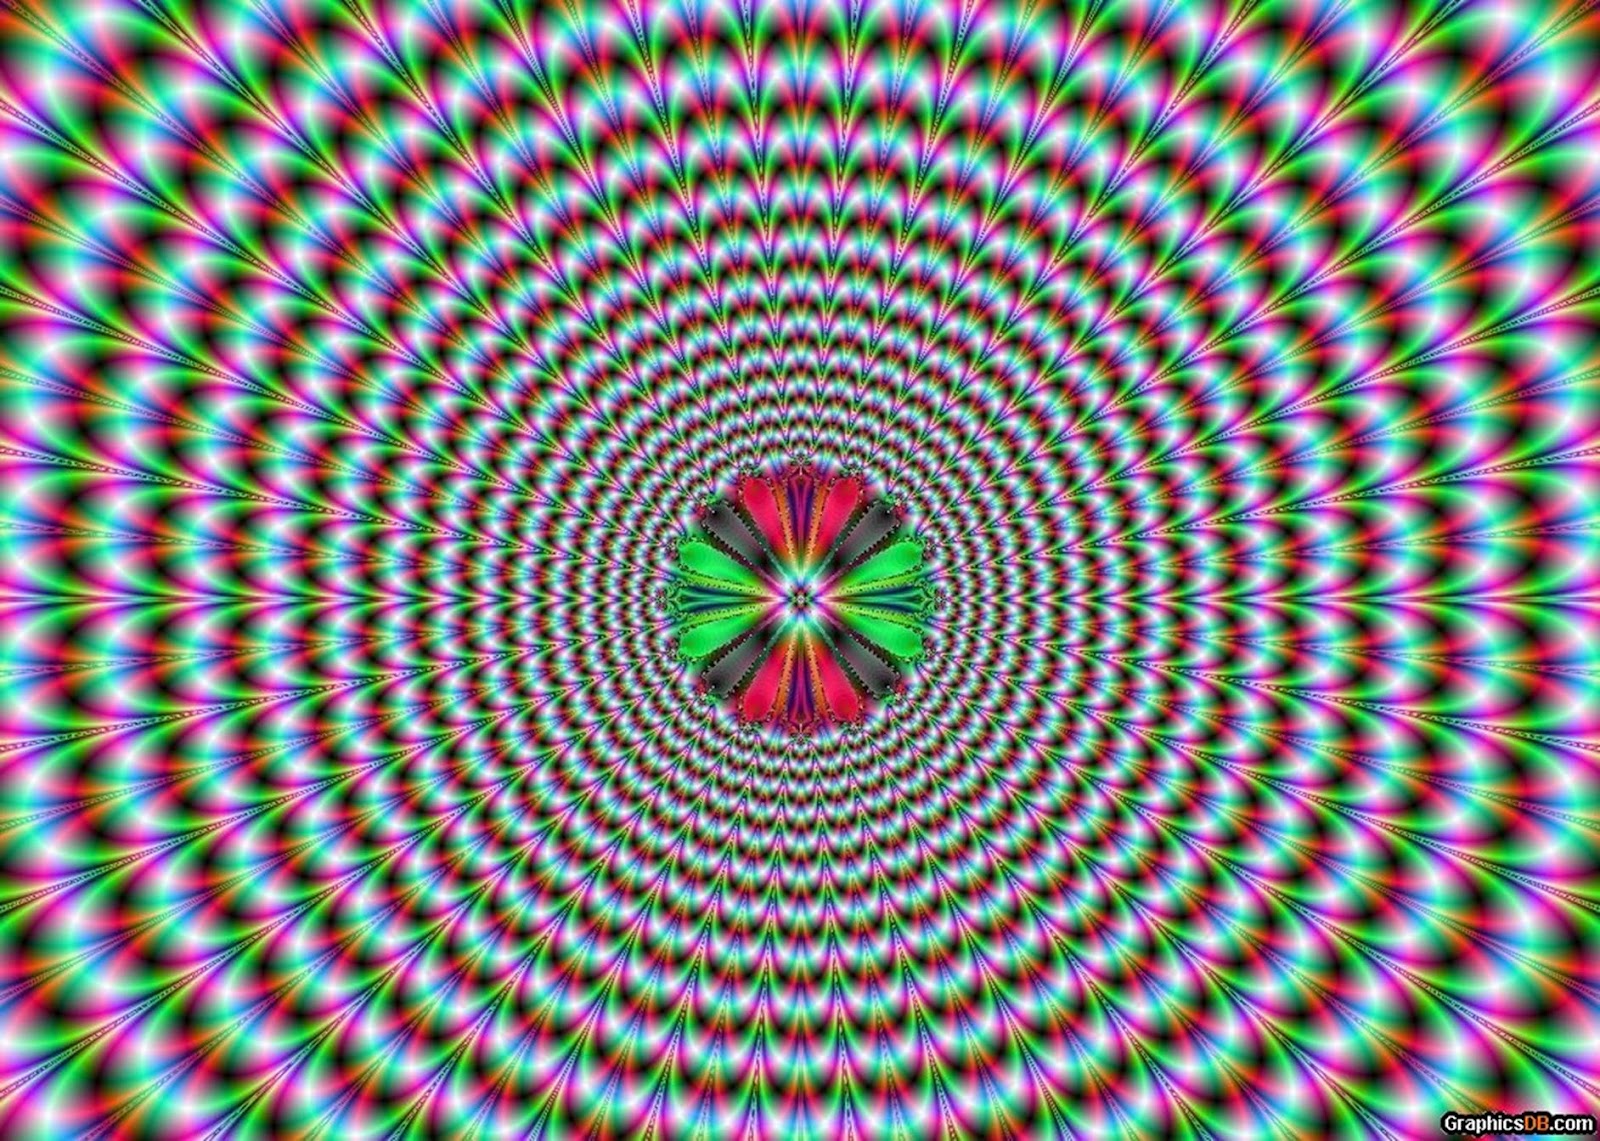 Движущаяся картина 3. Оптические иллюзии. Движущиеся оптические иллюзии. Оптические картинки для зрения. Картины для расслабления глаз.